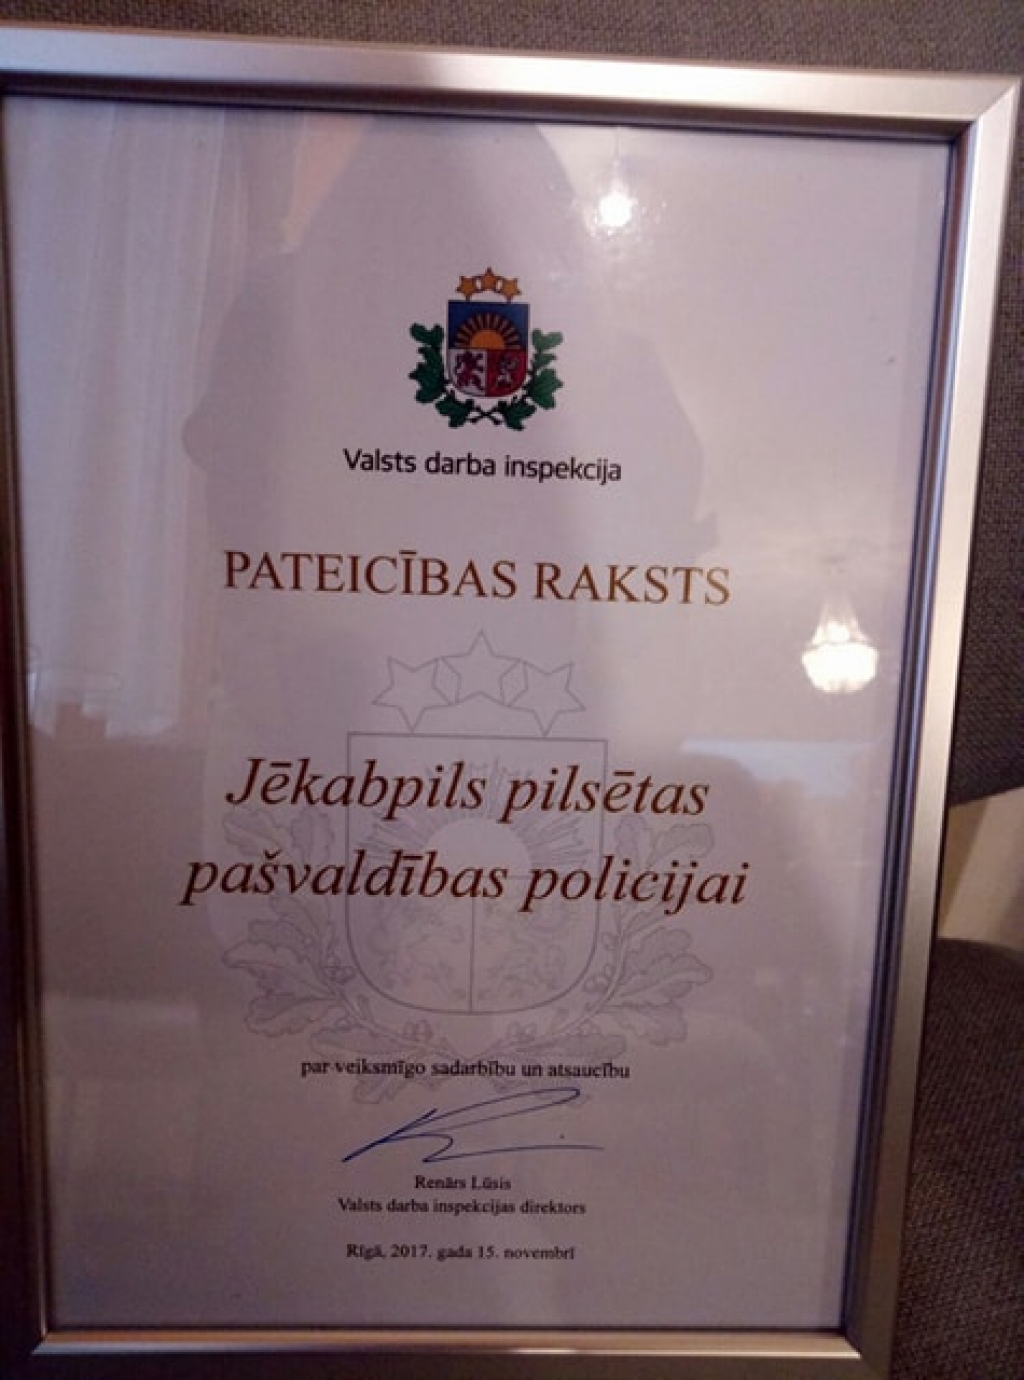 Jēkabpils pilsētas pašvaldības policijas kolektīvs saņem Pateicības rakstu